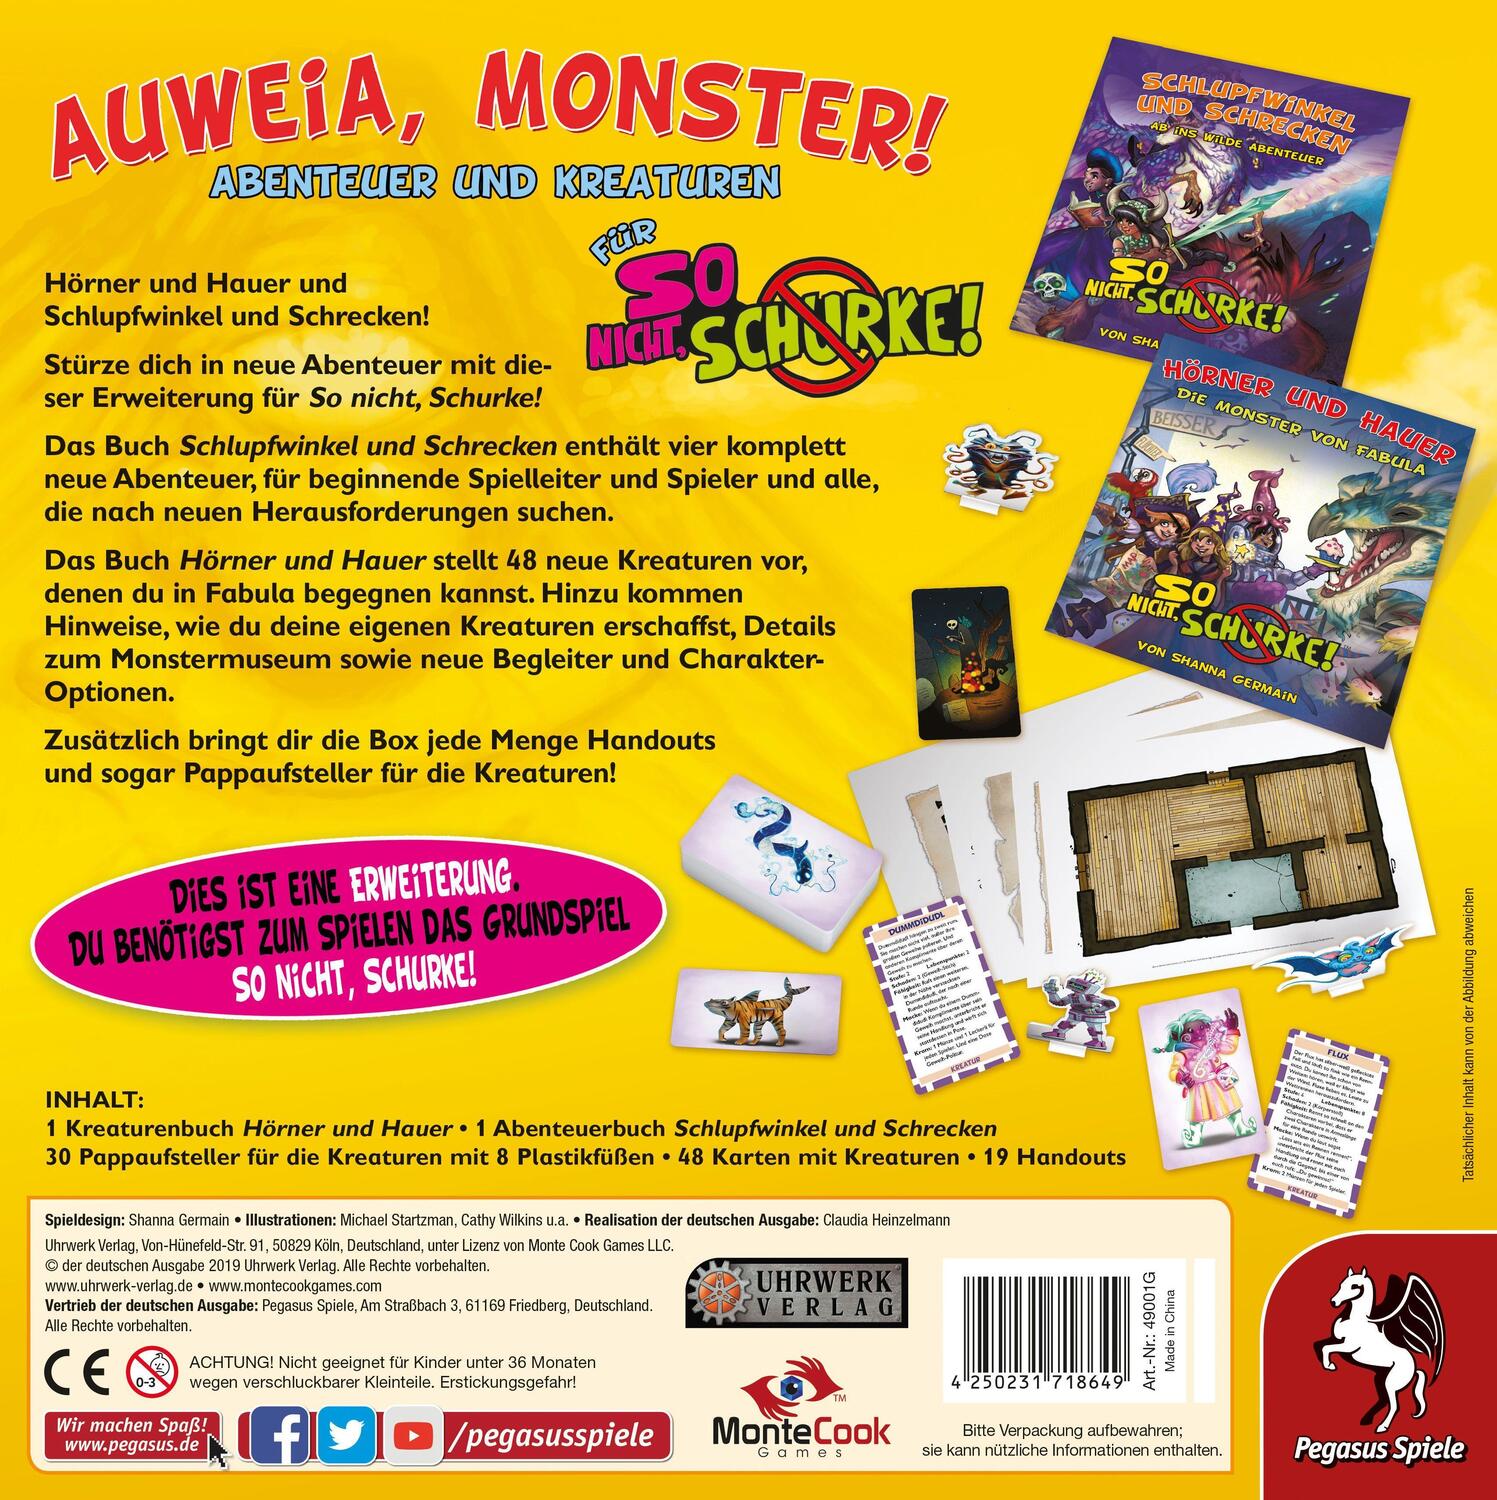 Bild: 4250231718649 | So nicht, Schurke! - Auweia, Monster! (Erweiterung) | Spiel | 49001G